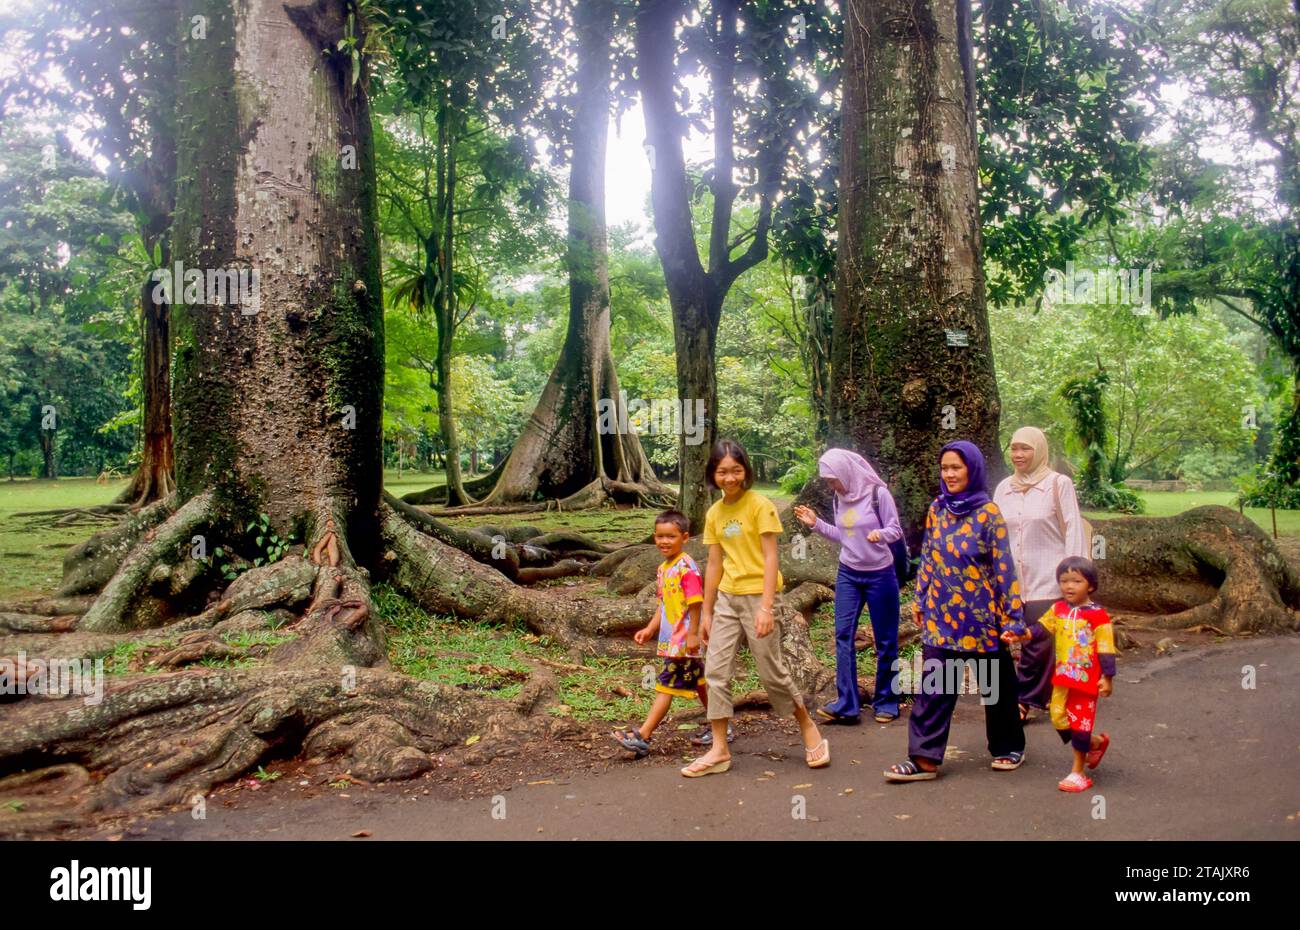 Indonesien, Bogor. Frauen und Kinder besuchen die Bogor Botanischen Gärten (Indonesisch: Kebun Raya). Stockfoto